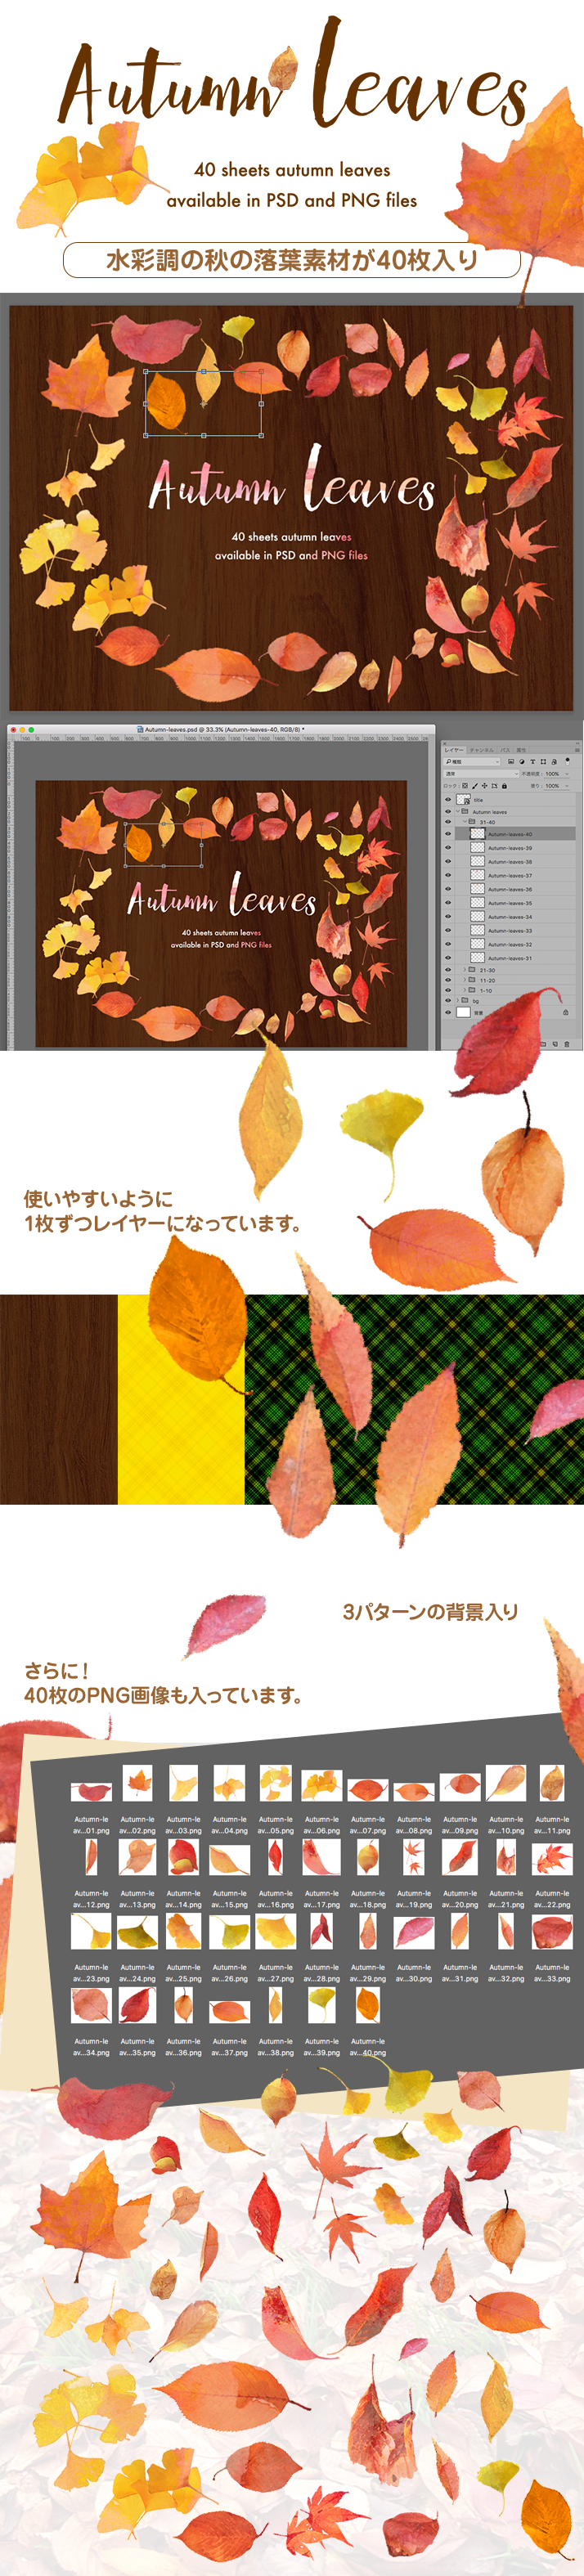 秋の落葉の素材